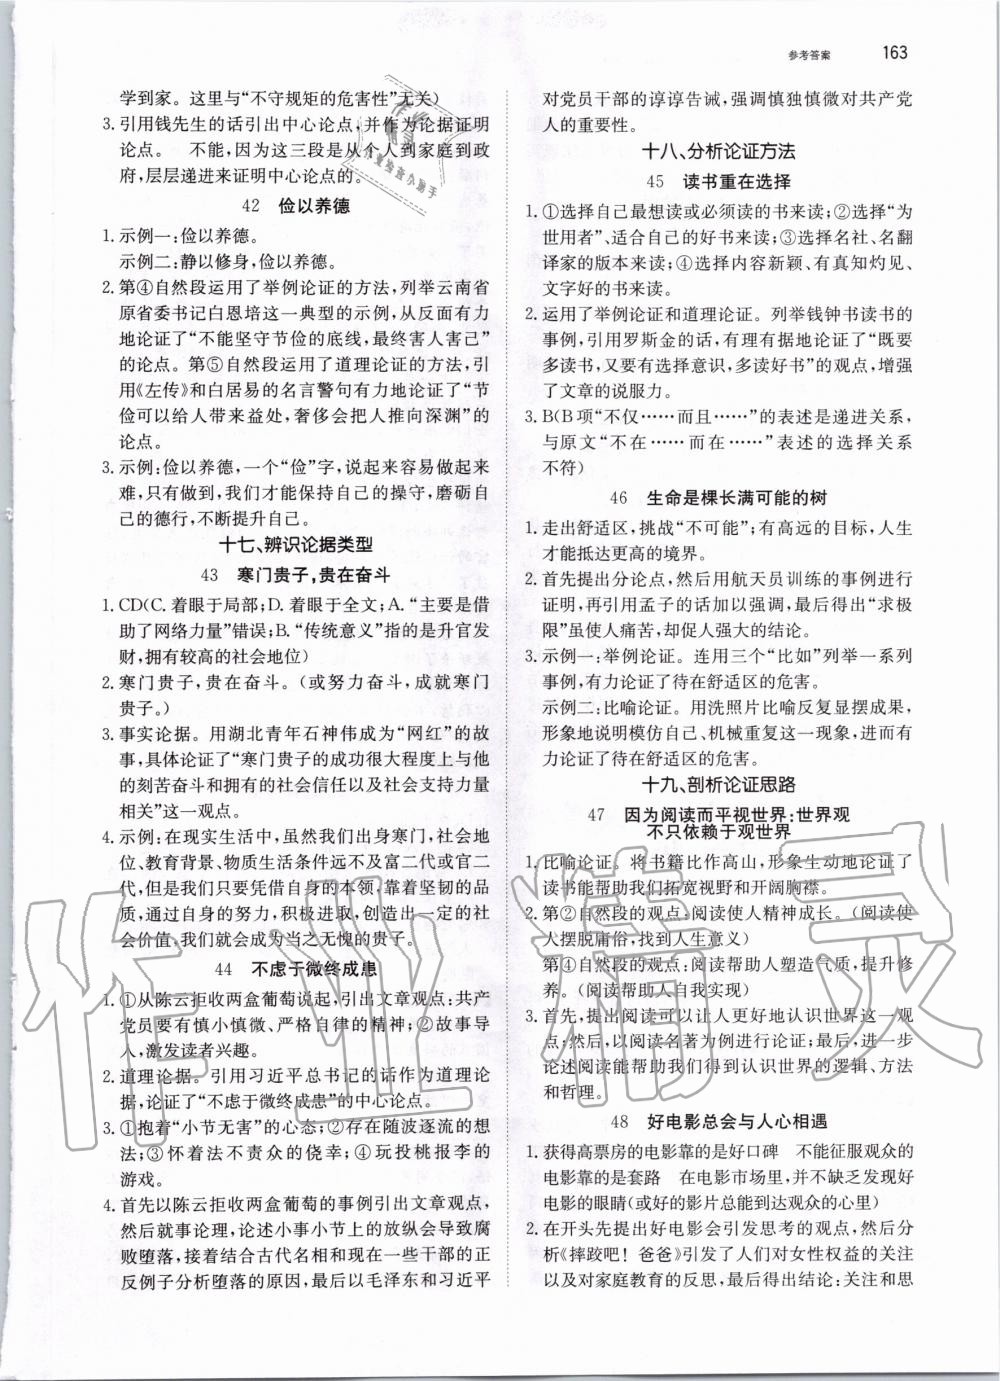 2019年锐阅读初中语文阅读训练5合1中考 第9页